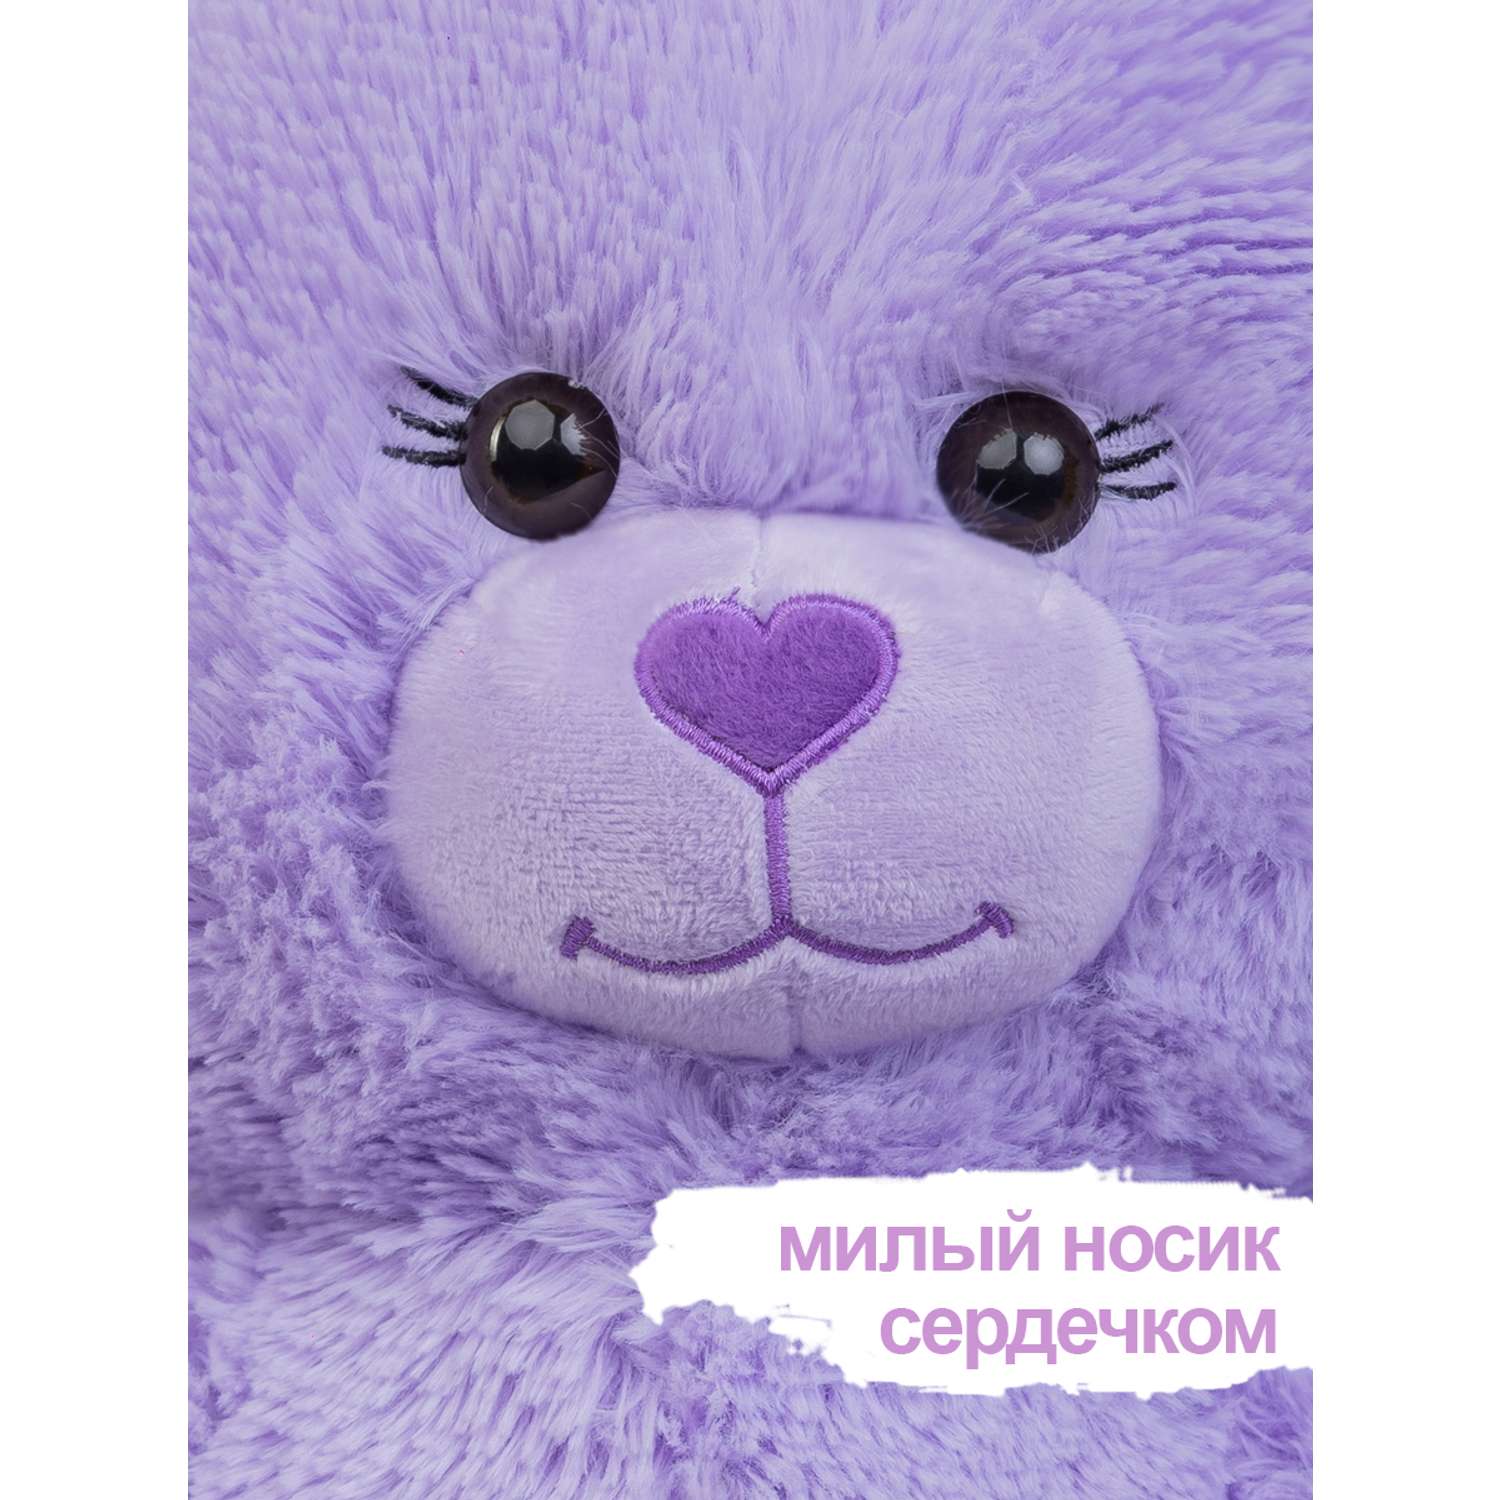 Мягкая игрушка KULT of toys Плюшевый медведь Color 65 см цвет сиреневый - фото 5